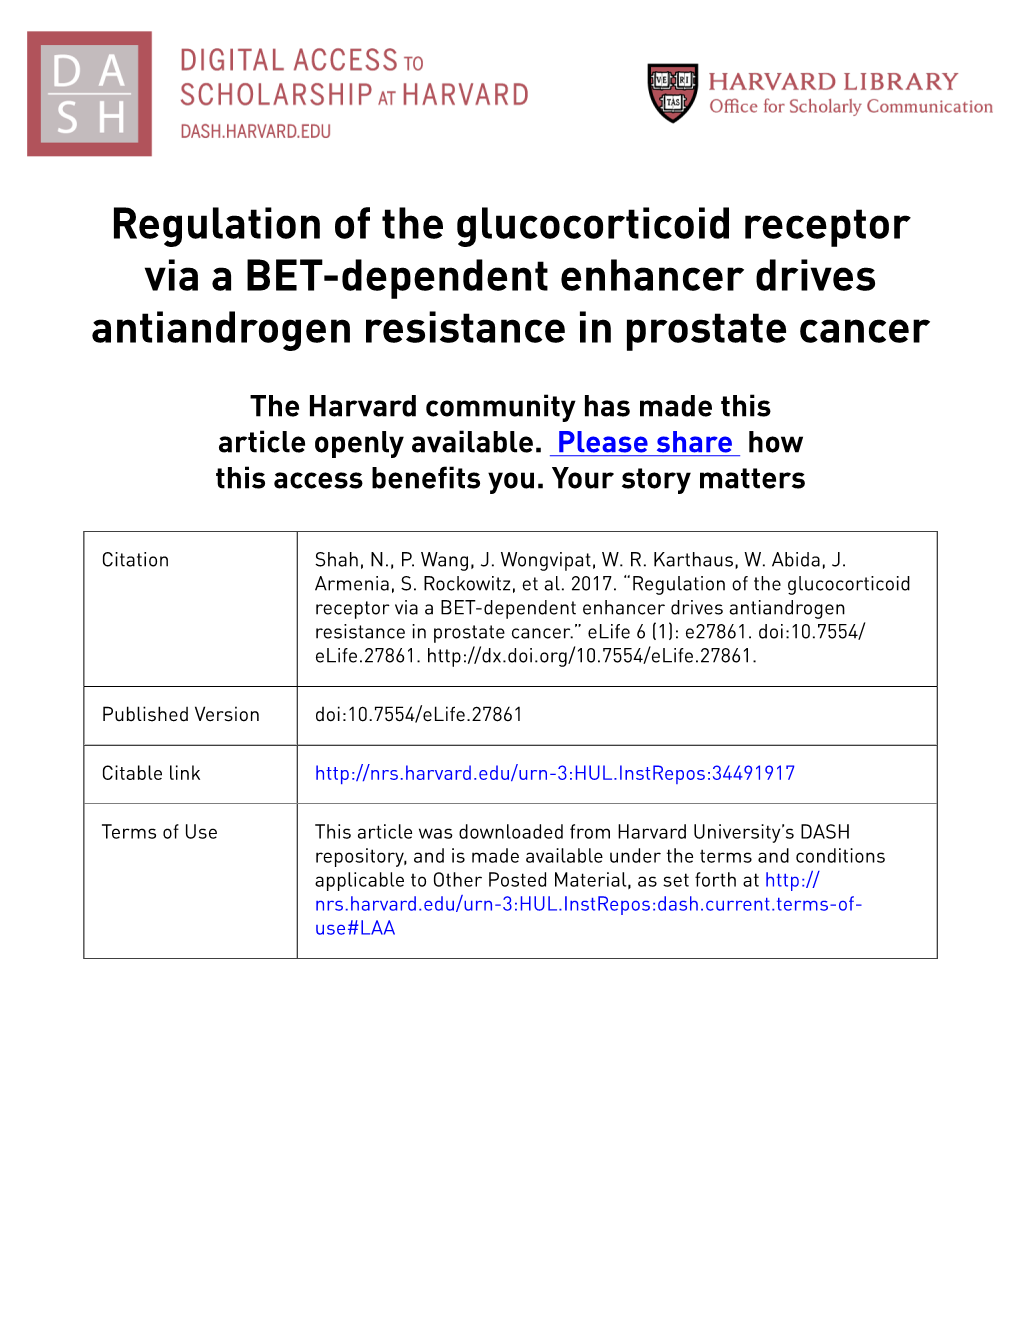 Regulation of the Glucocorticoid Receptor Via a BET-Dependent Enhancer Drives Antiandrogen Resistance in Prostate Cancer